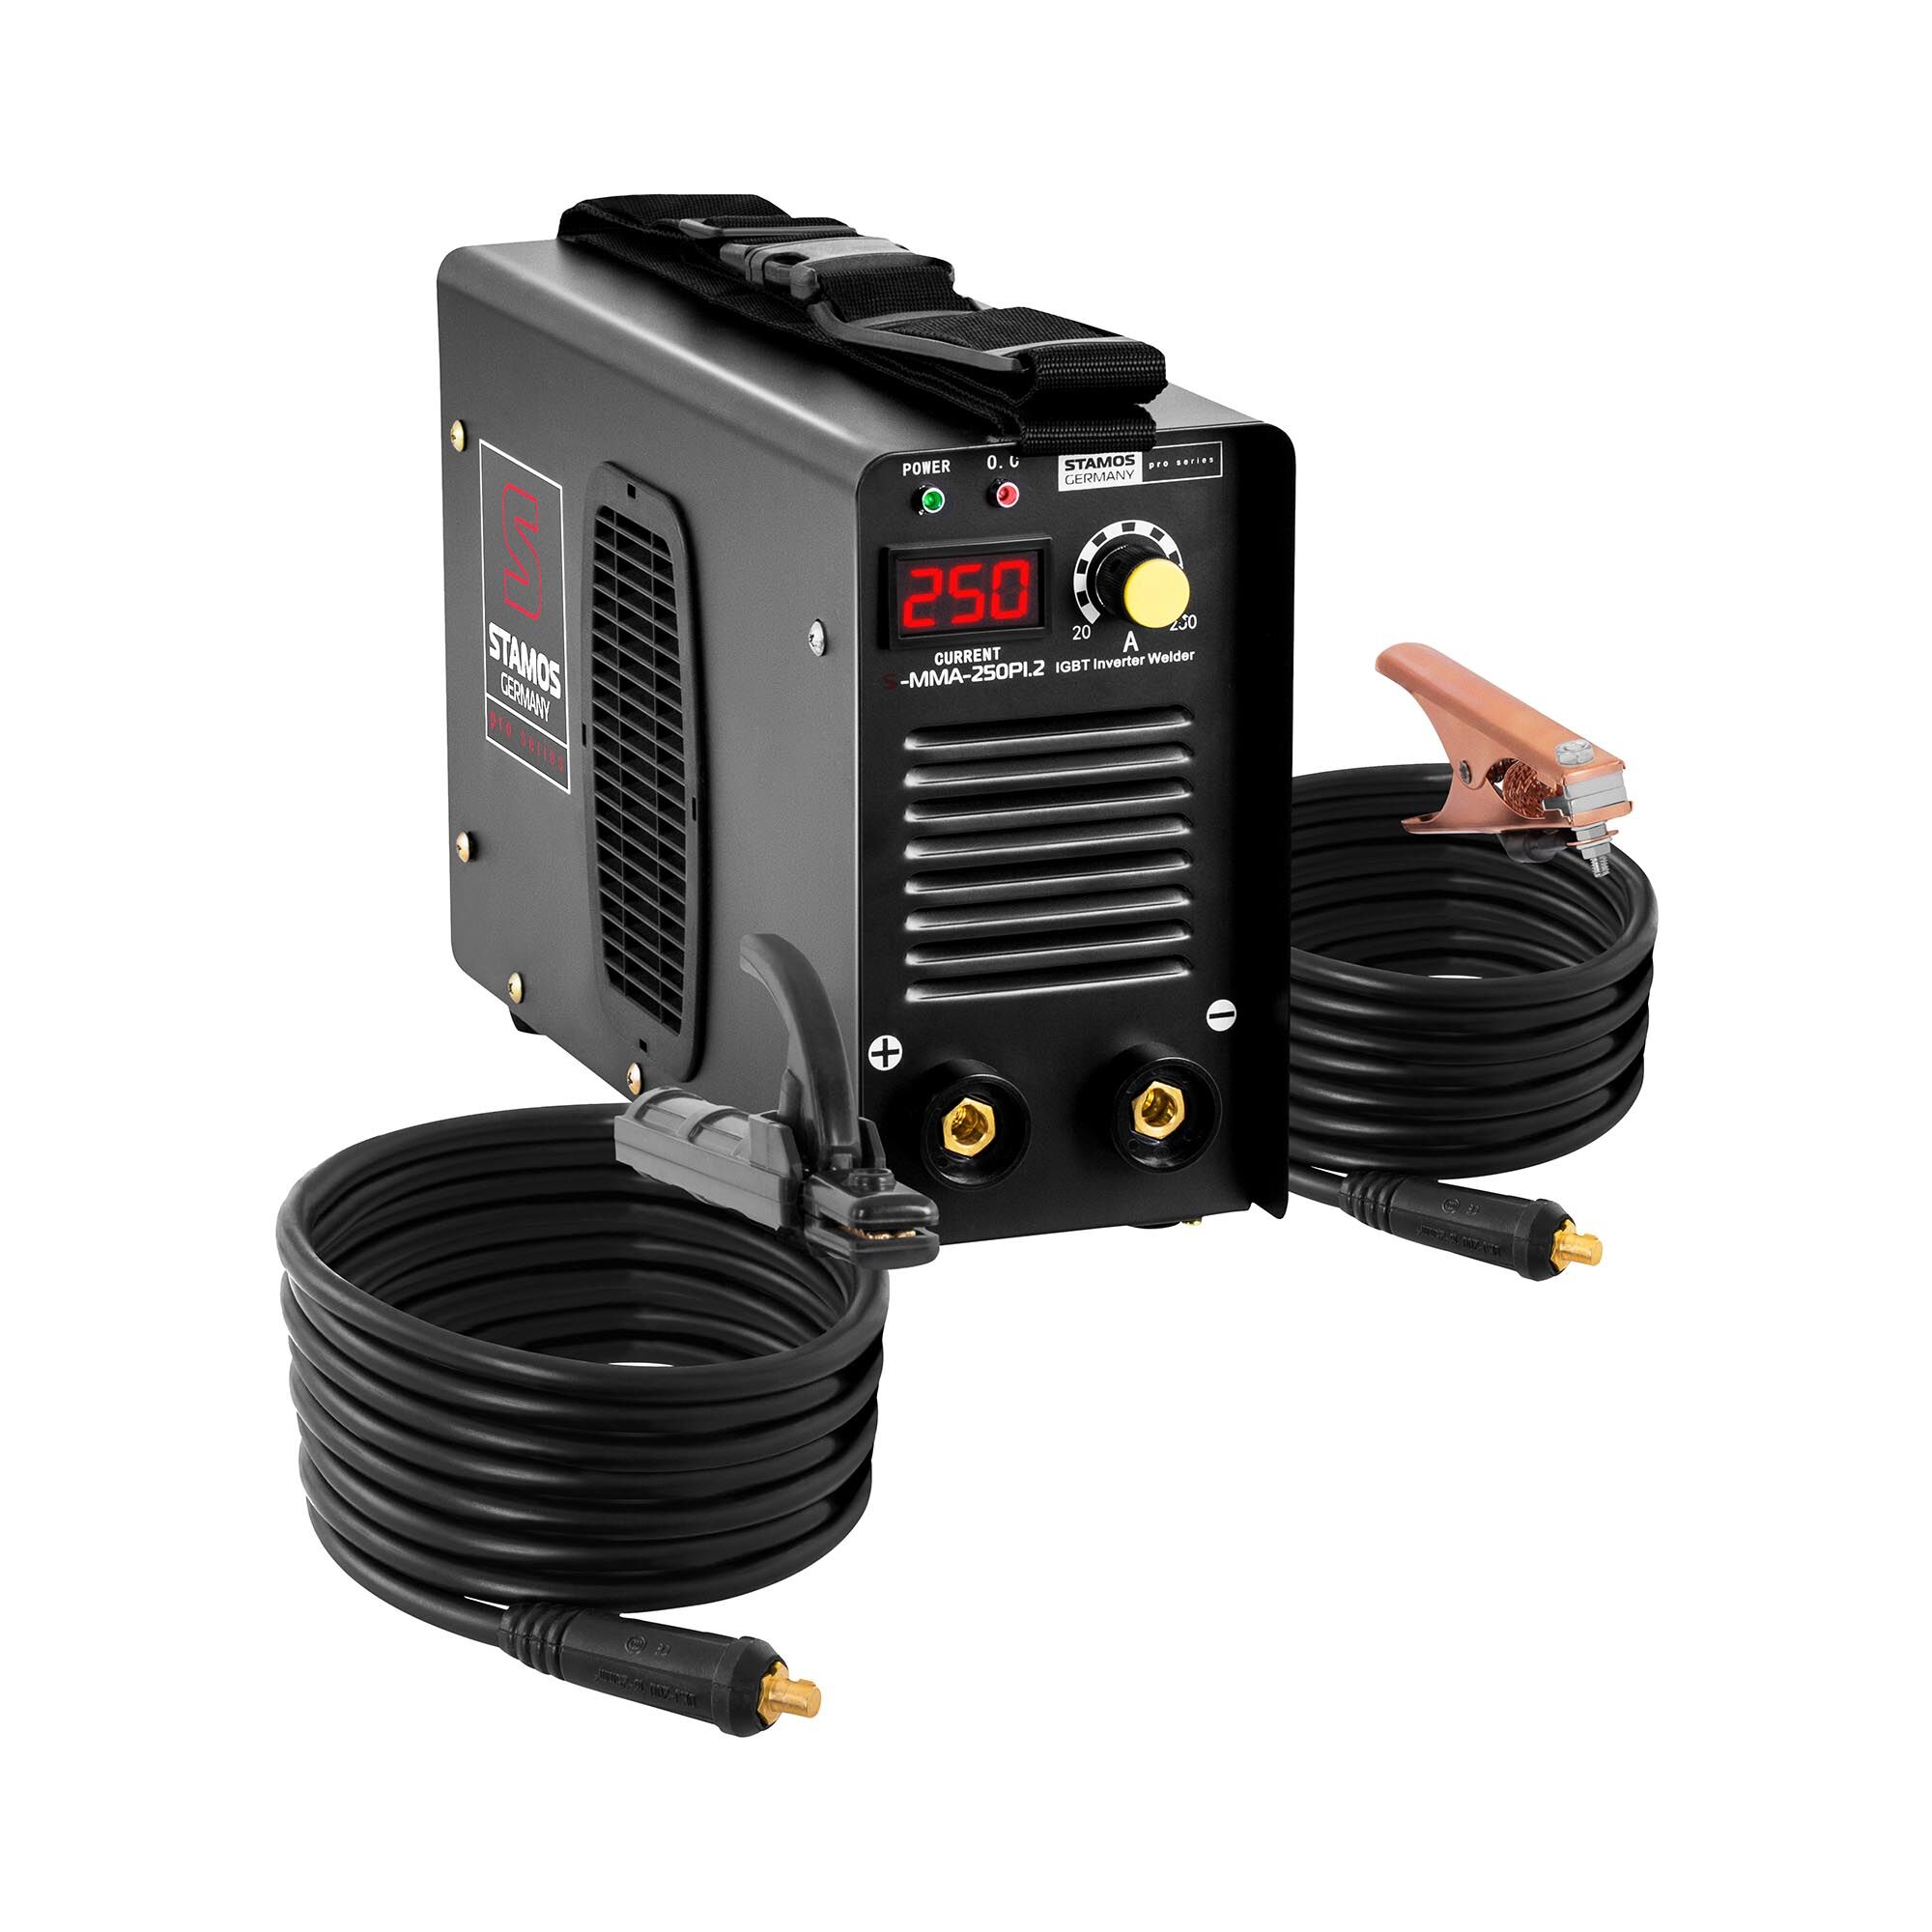 Stamos Pro Series Elektroden Schweißgerät - 250 A - 8 Meter Kabel - Hot Start - PRO